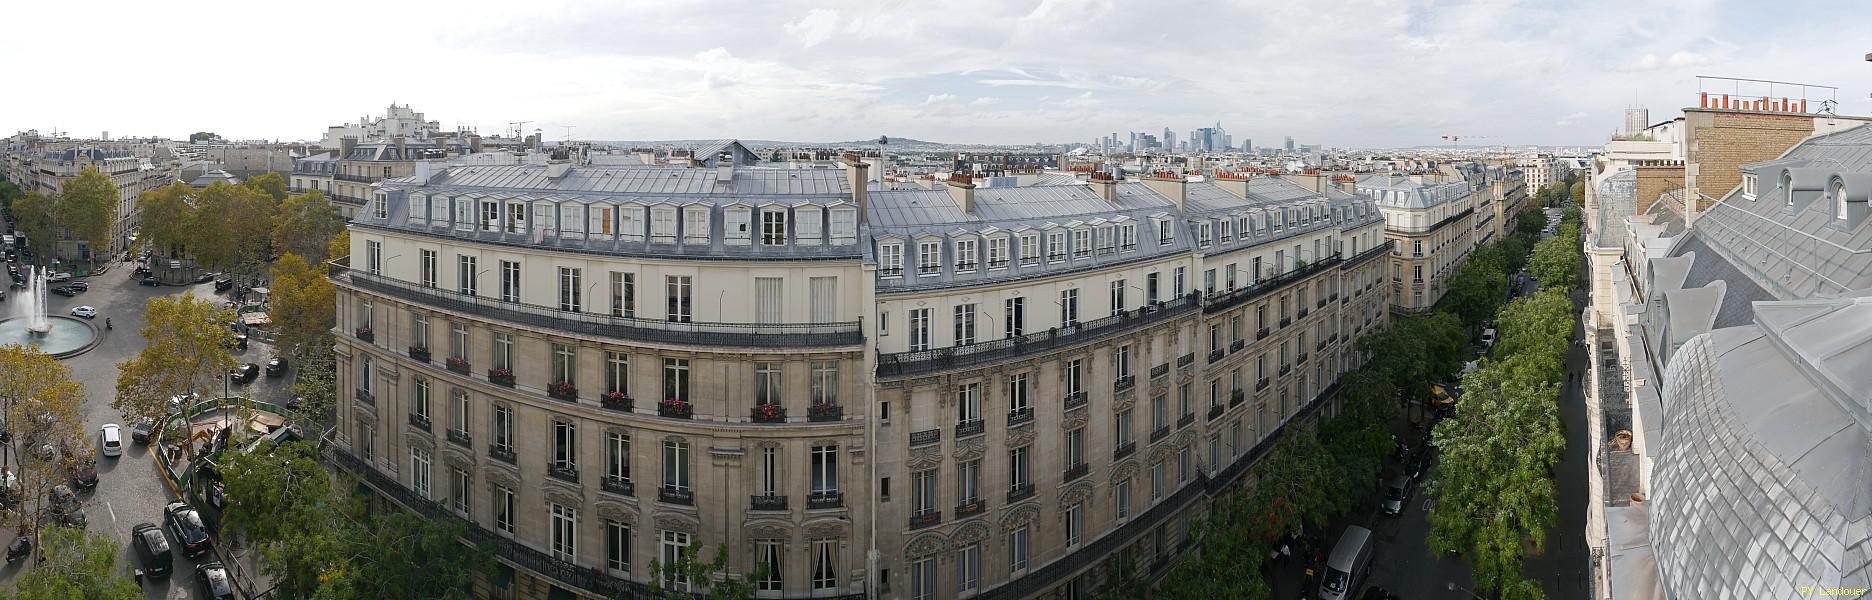 Paris vu d'en haut,  86 avenue Poincar